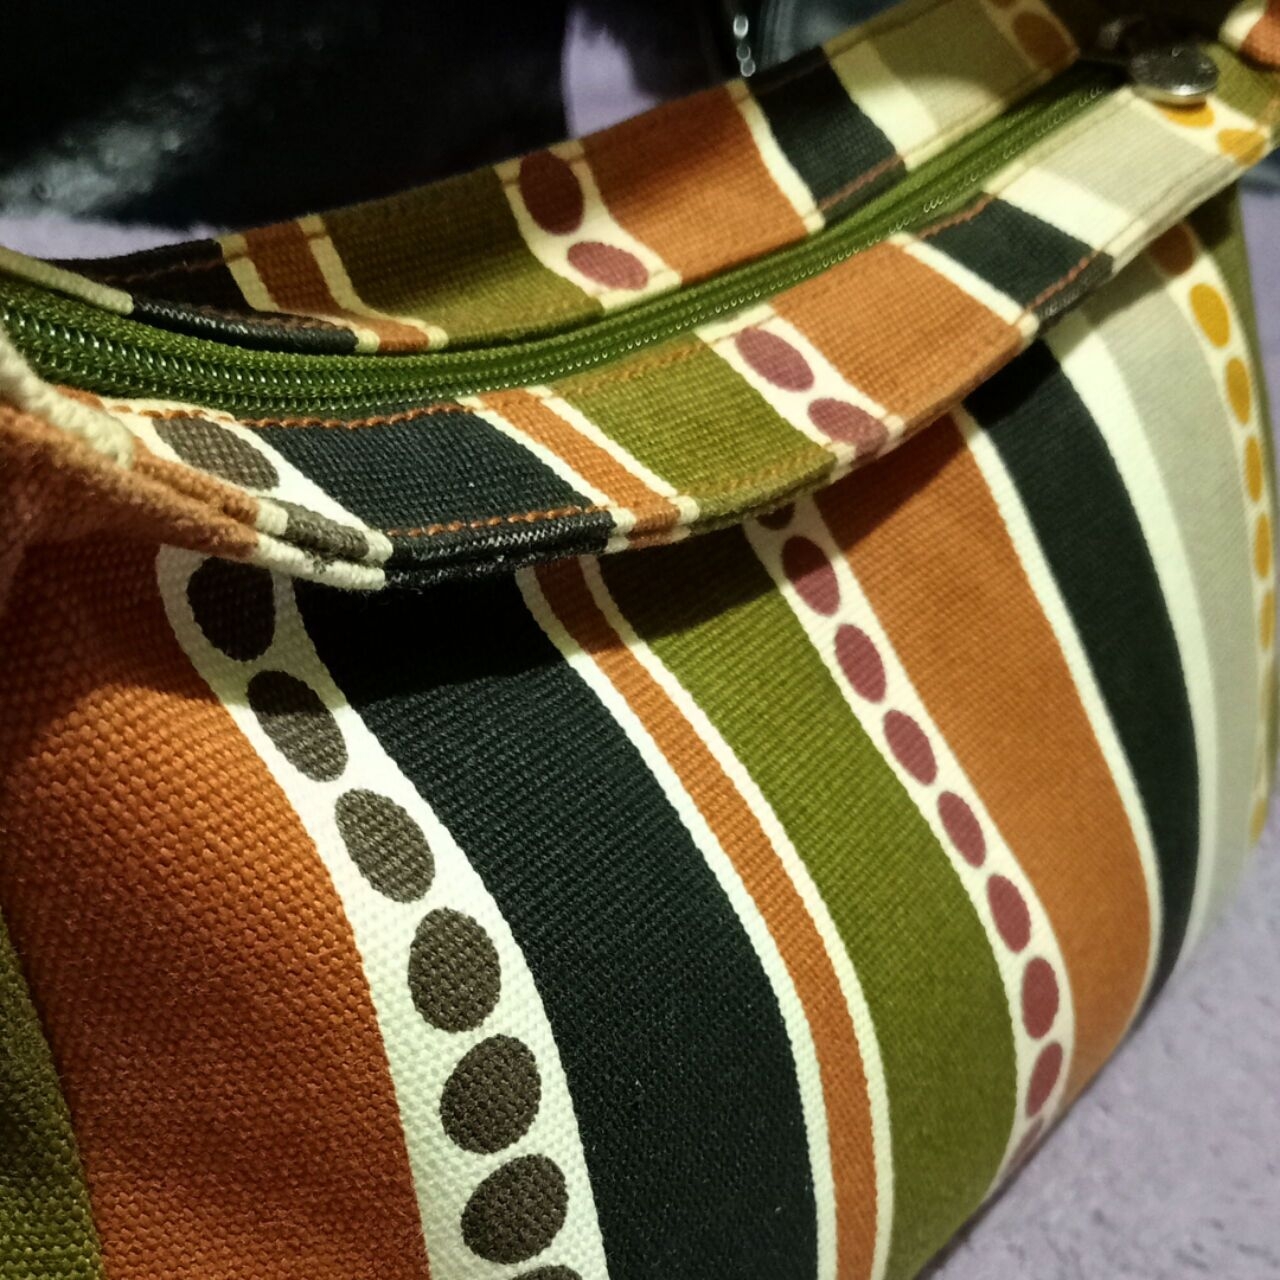 Jim Thompson Multicolour Stripes Shoulder Bag